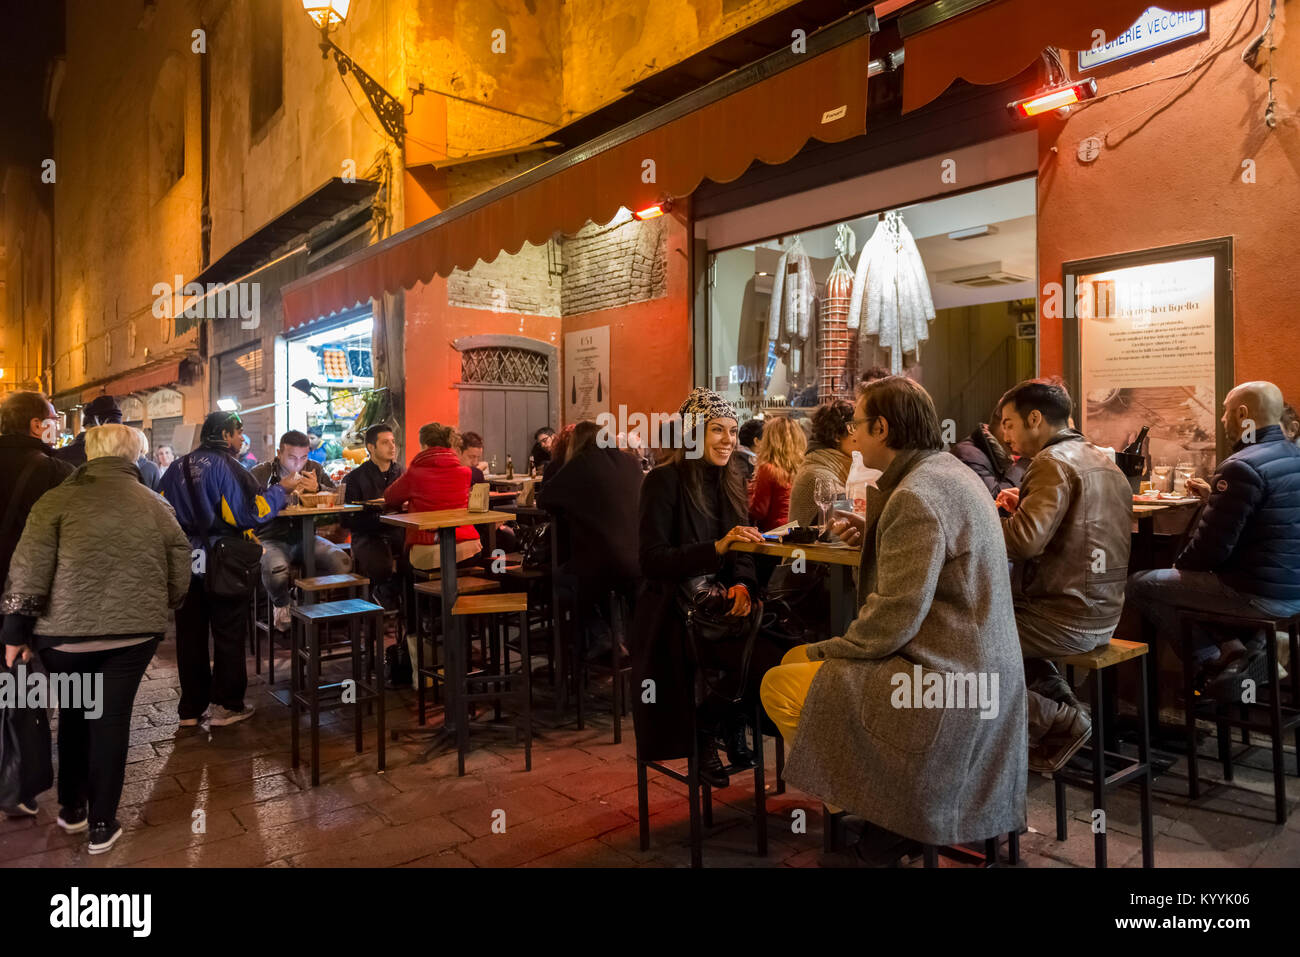 Les gens assis au restaurant dans restaurants, cafés et bars dans la Via Pescherie Vecchie, une rue de la ville de Bologne, Italie pendant la nuit Banque D'Images